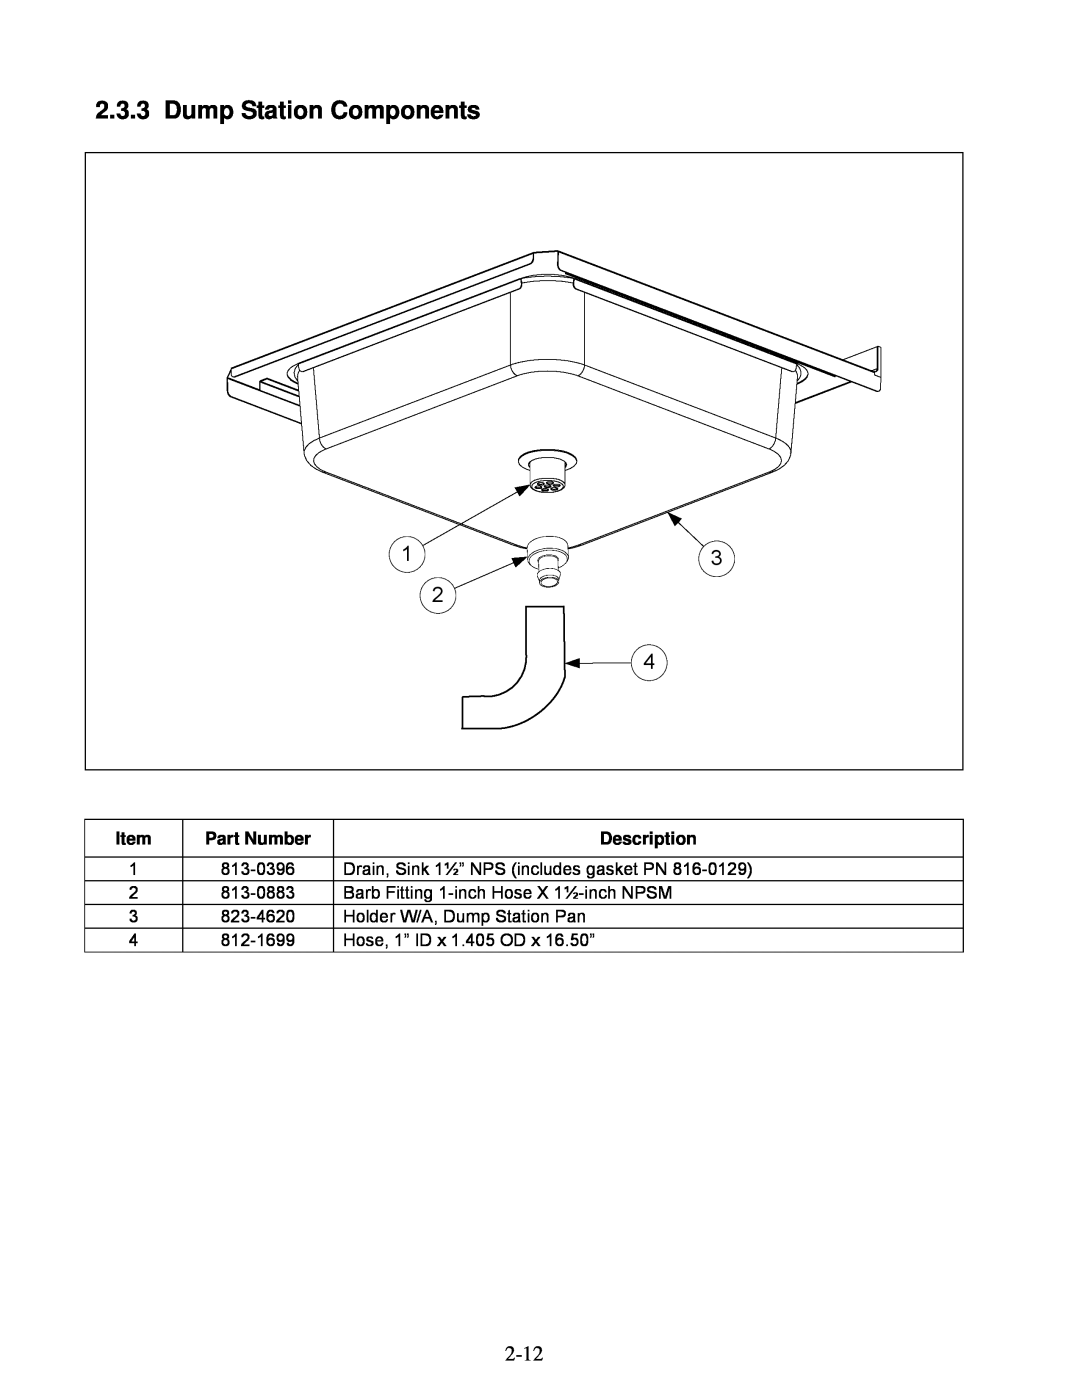 Frymaster 2836 manual Dump Station Components, Part Number, Description, 813-0396, Drain, Sink 1½” NPS includes gasket PN 